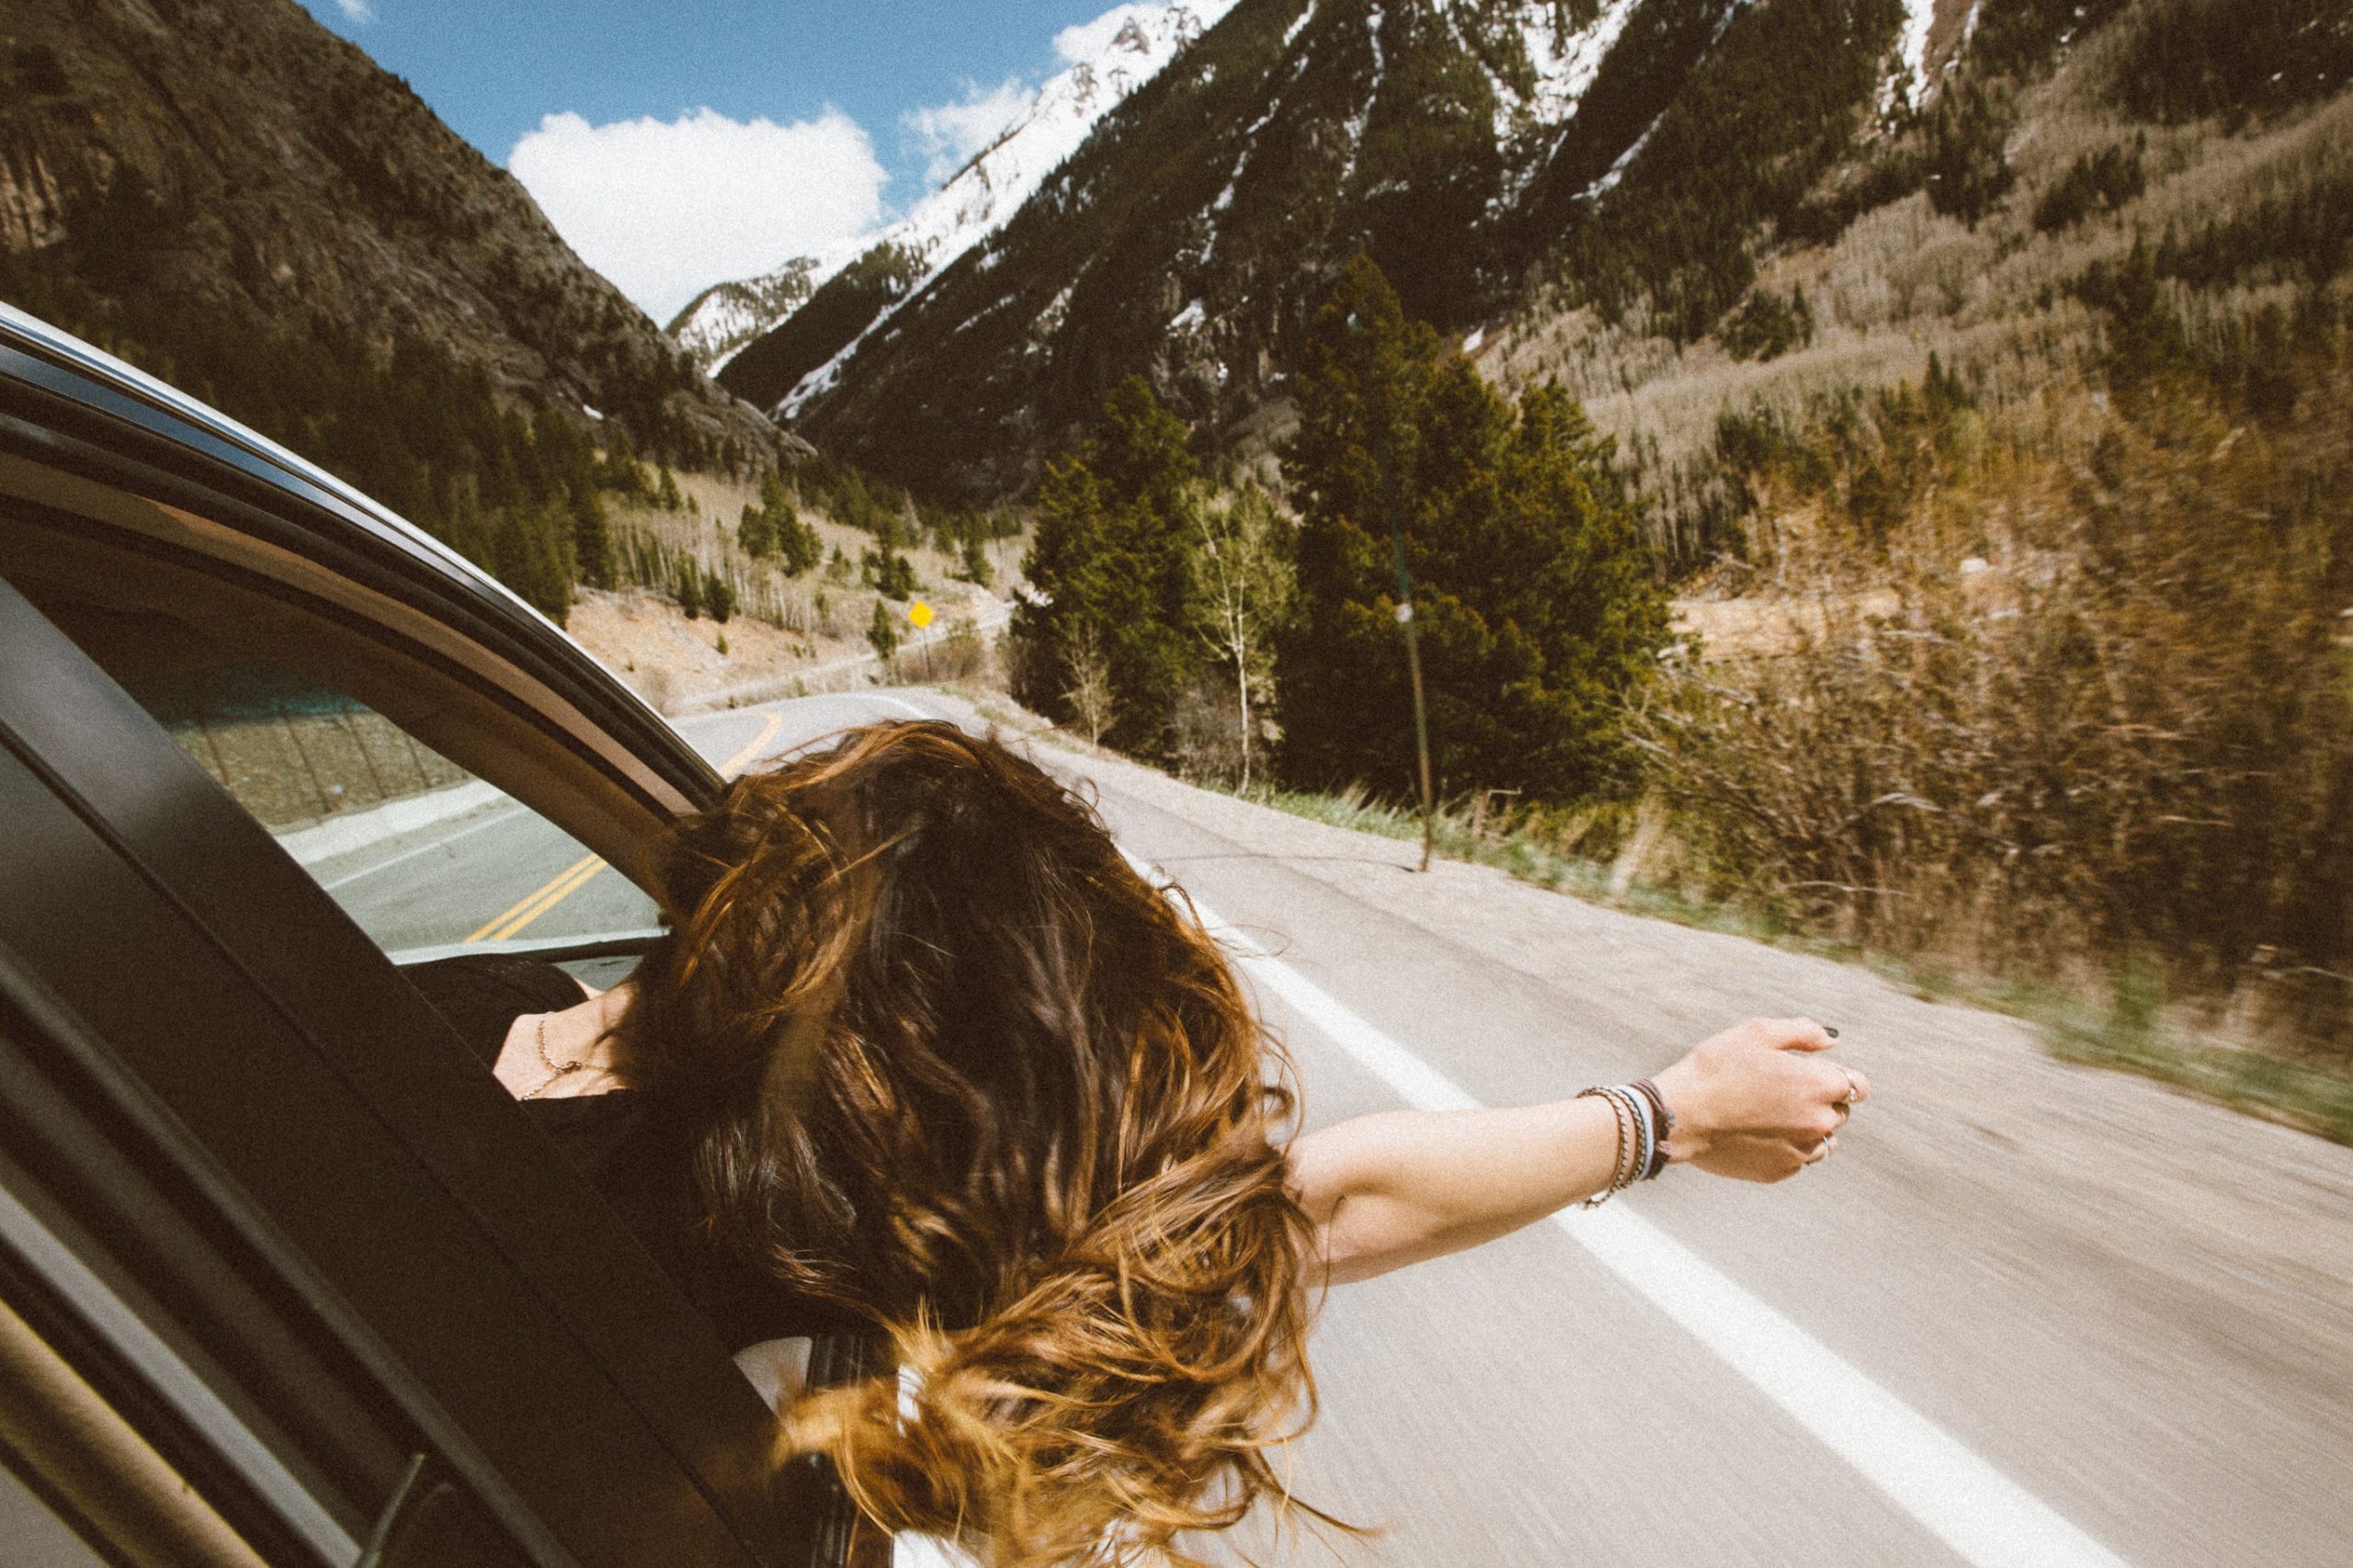 Uma mulher com a cabeça e o braço para fora do carro, ela está se sentindo livre de incertezas em sua vida.